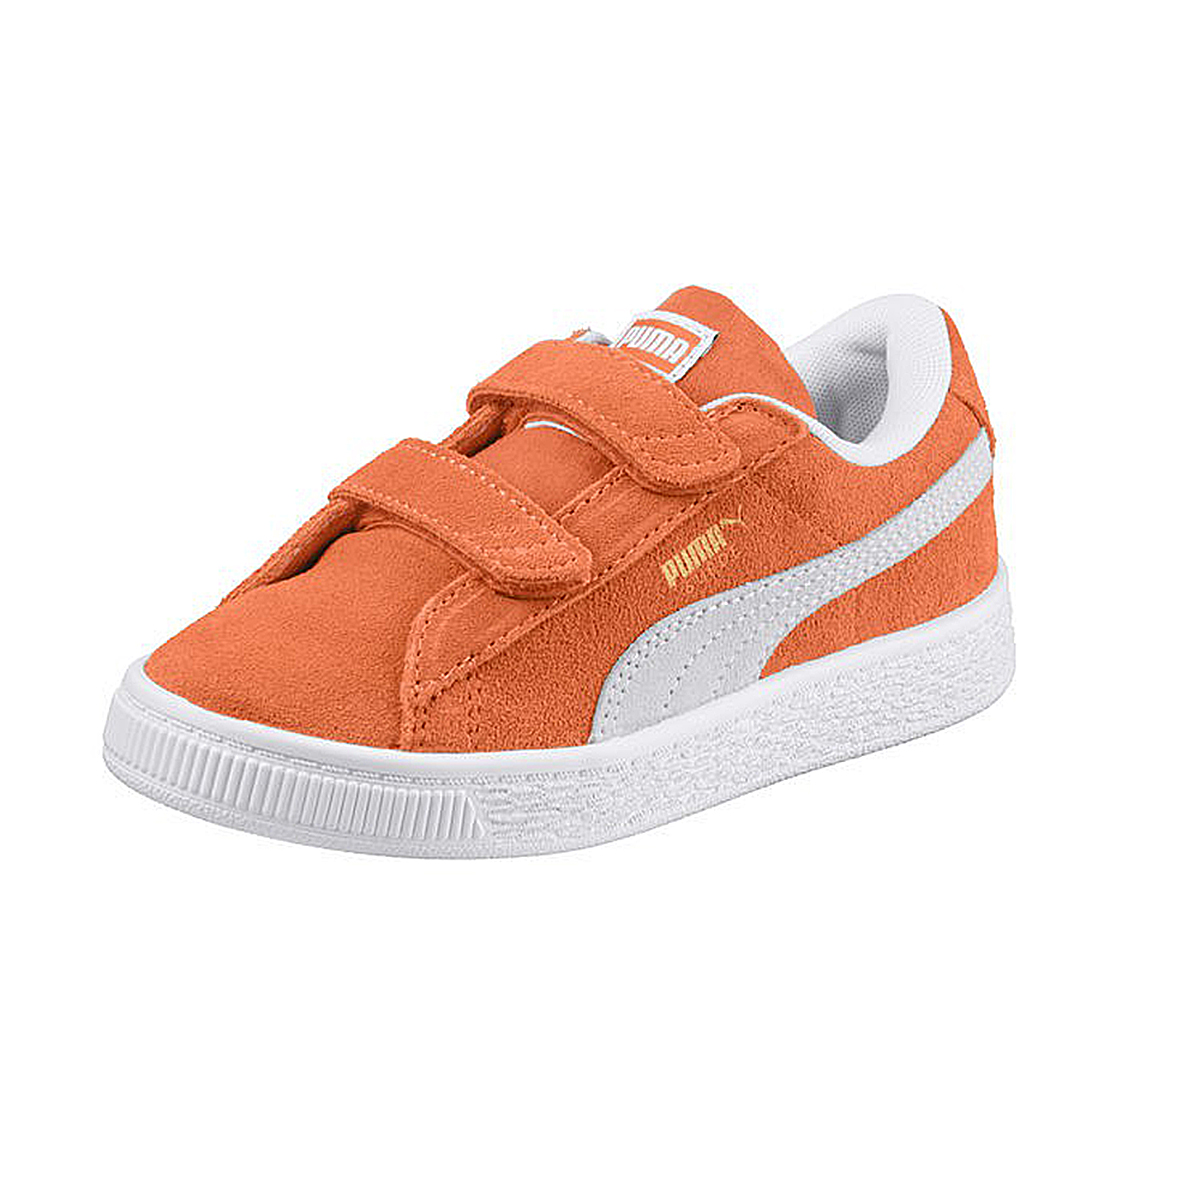 Puma Suede Classic V Inf Kinder Sneaker Schuhe 365077 15 orange